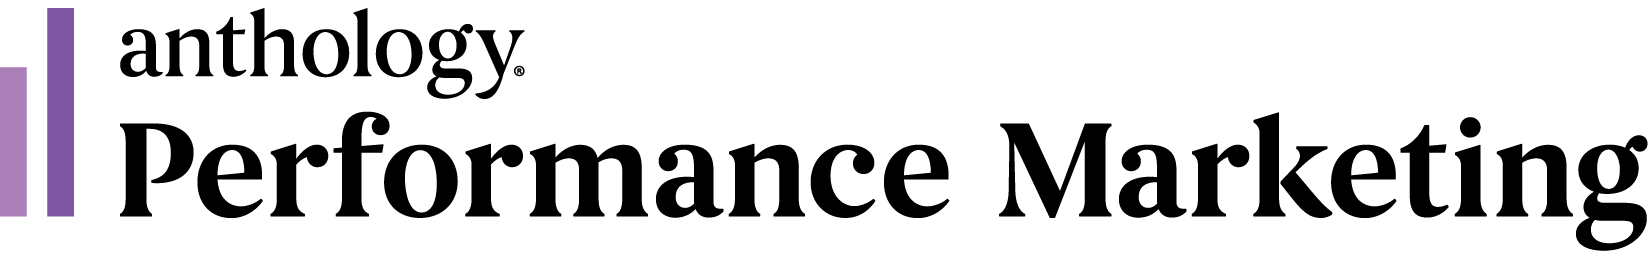 Anthology Performance Marketing logo with trademark